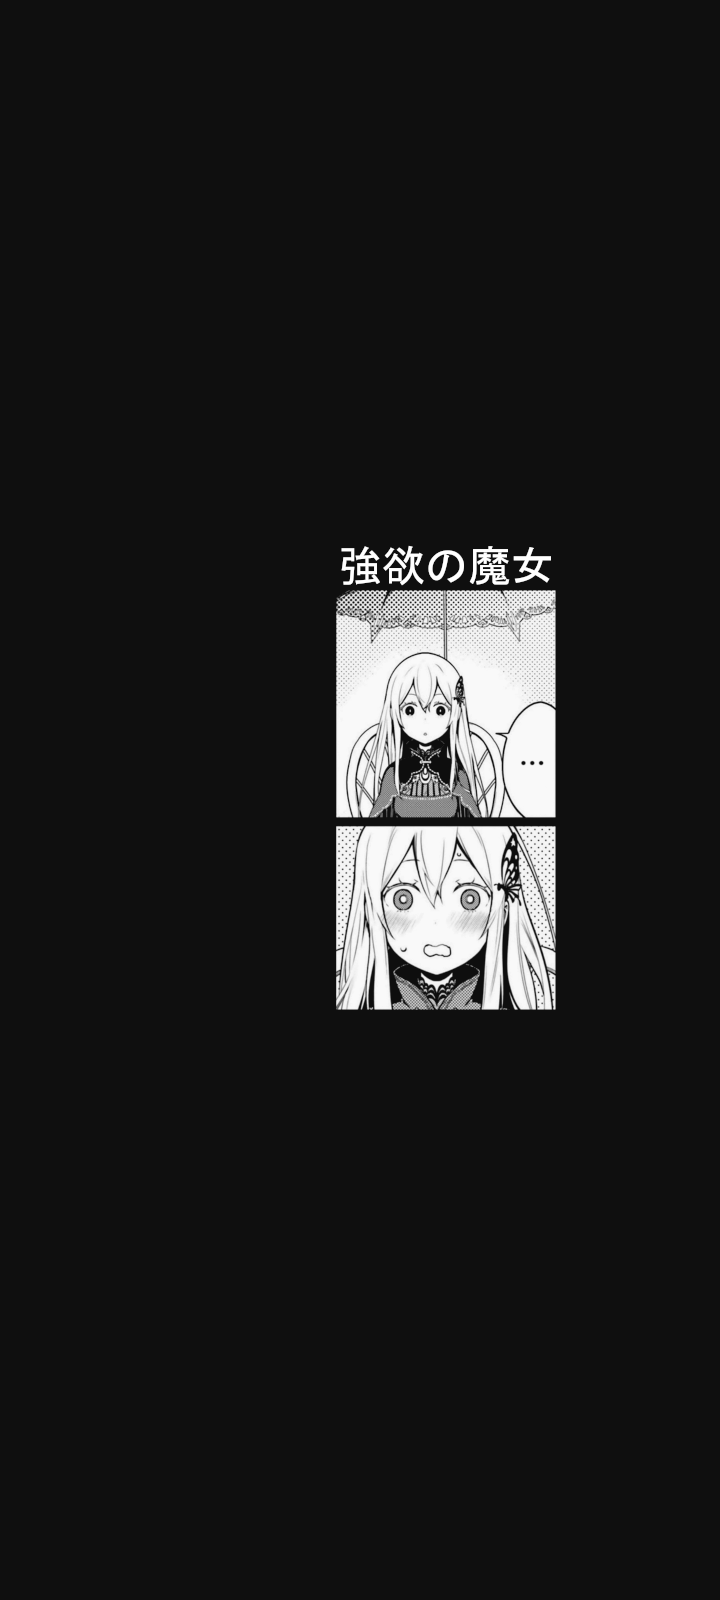 Echidna (Re:Zero) - Re:Zero Kara Hajimeru Isekai Seikatsu - Mobile  Wallpaper by raum #2526782 - Zerochan Anime Image Board